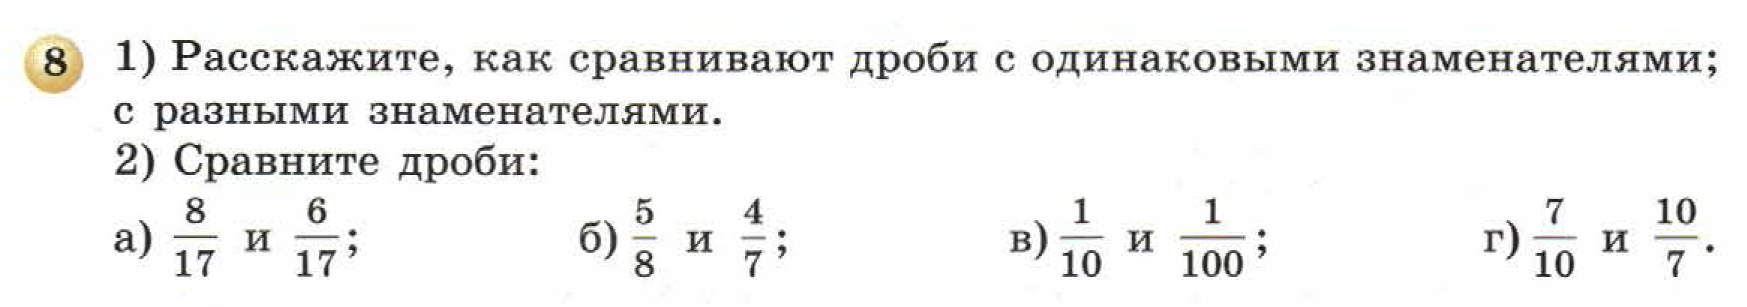 решебник по математике Бунимович 5 класс условие итоги главы 8 задание 8